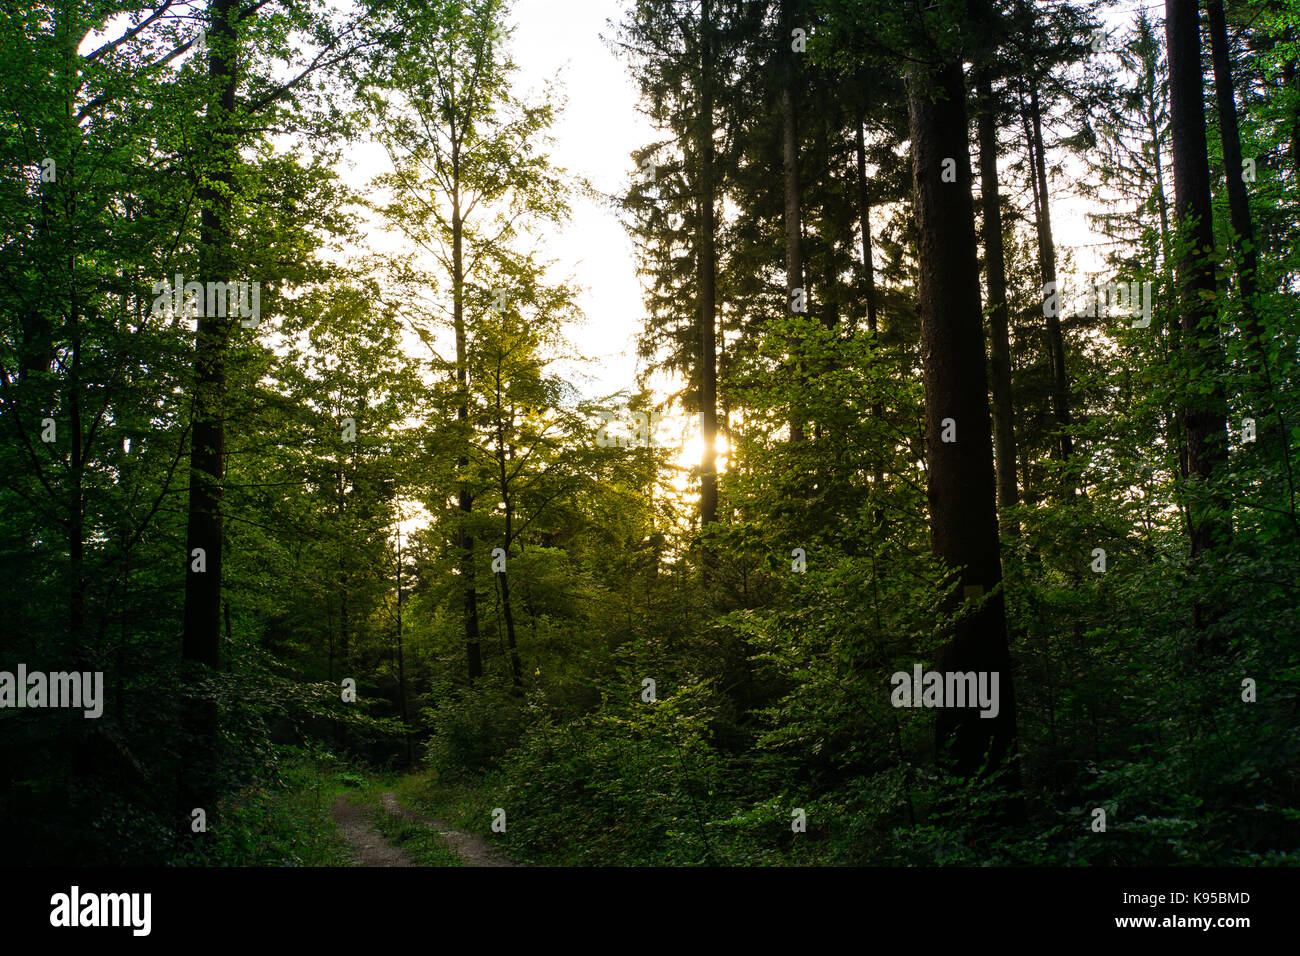 Foresta Nera Germania vicino a Friburgo all'alba con luce calda del sole e il verde degli alberi Foto Stock